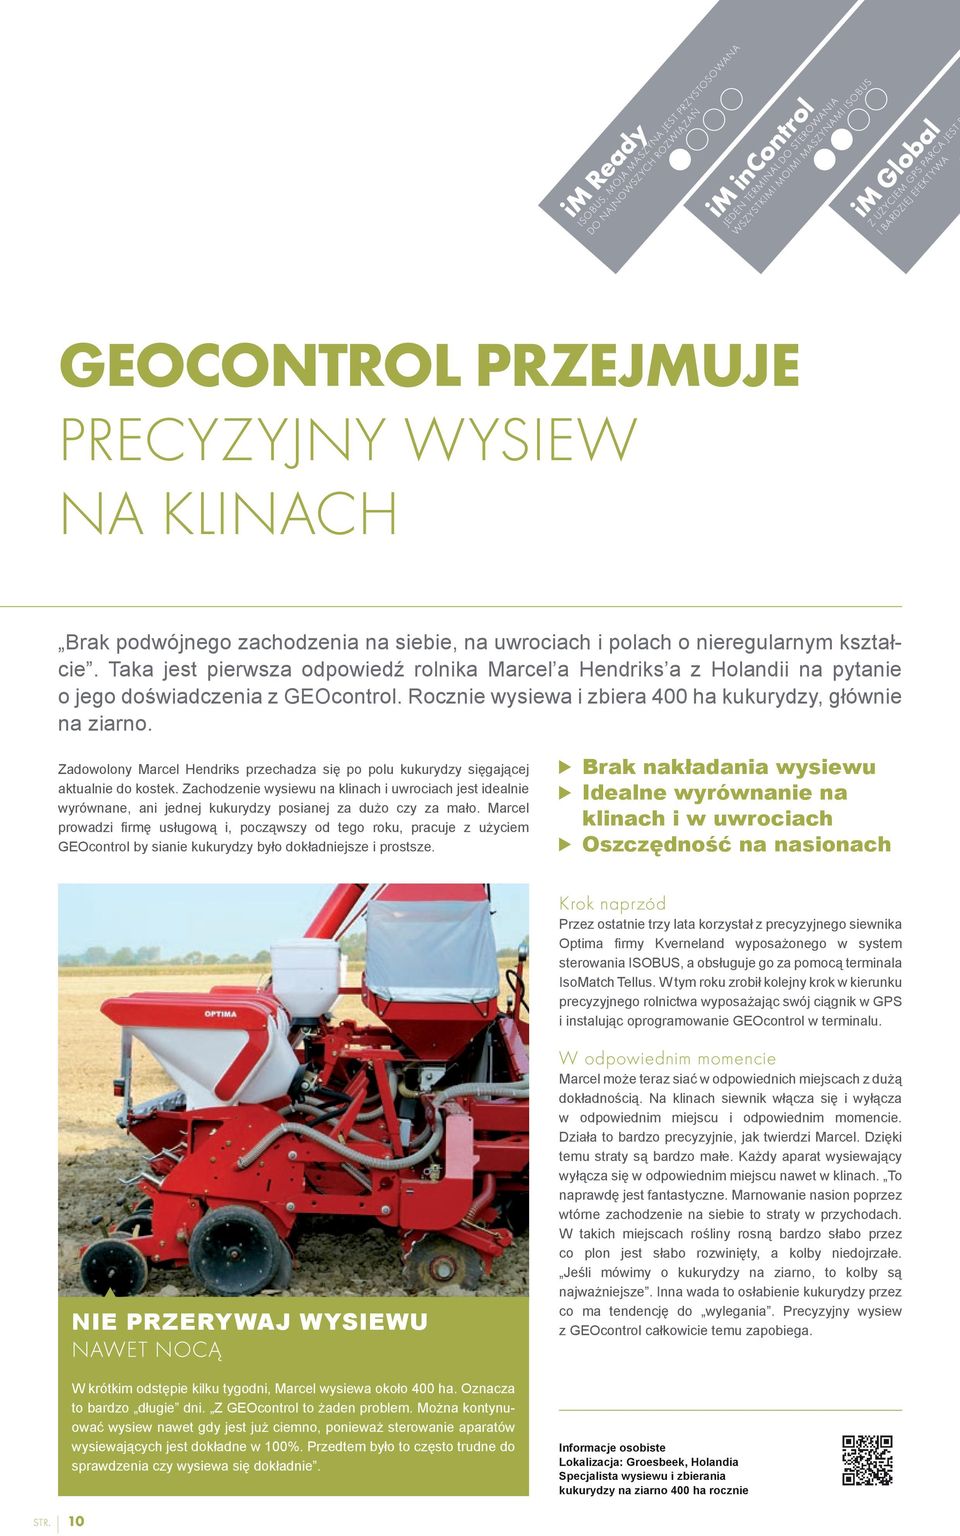 Taka jest pierwsza odpowiedź rolnika Marcel a Hendriks a z Holandii na pytanie o jego doświadczenia z GEOcontrol. Rocznie wysiewa i zbiera 400 ha kukurydzy, głównie na ziarno.